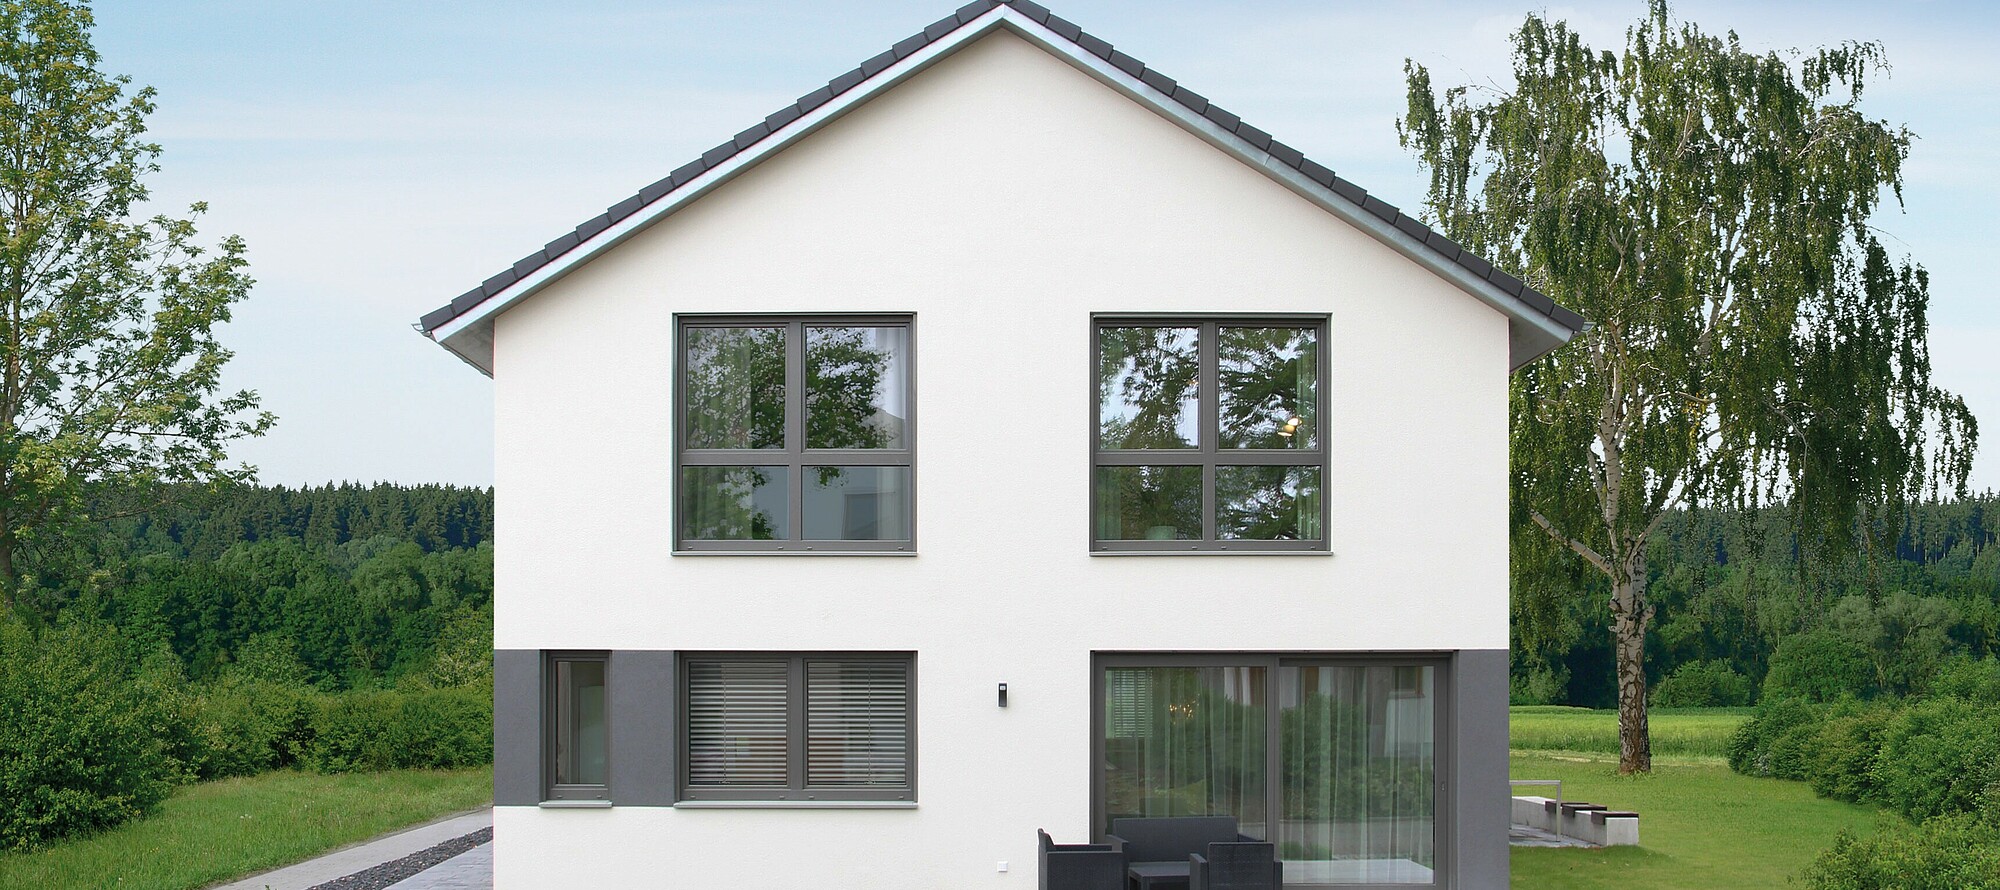 Variant - Fertighaus mit Satteldach von Hanse Haus